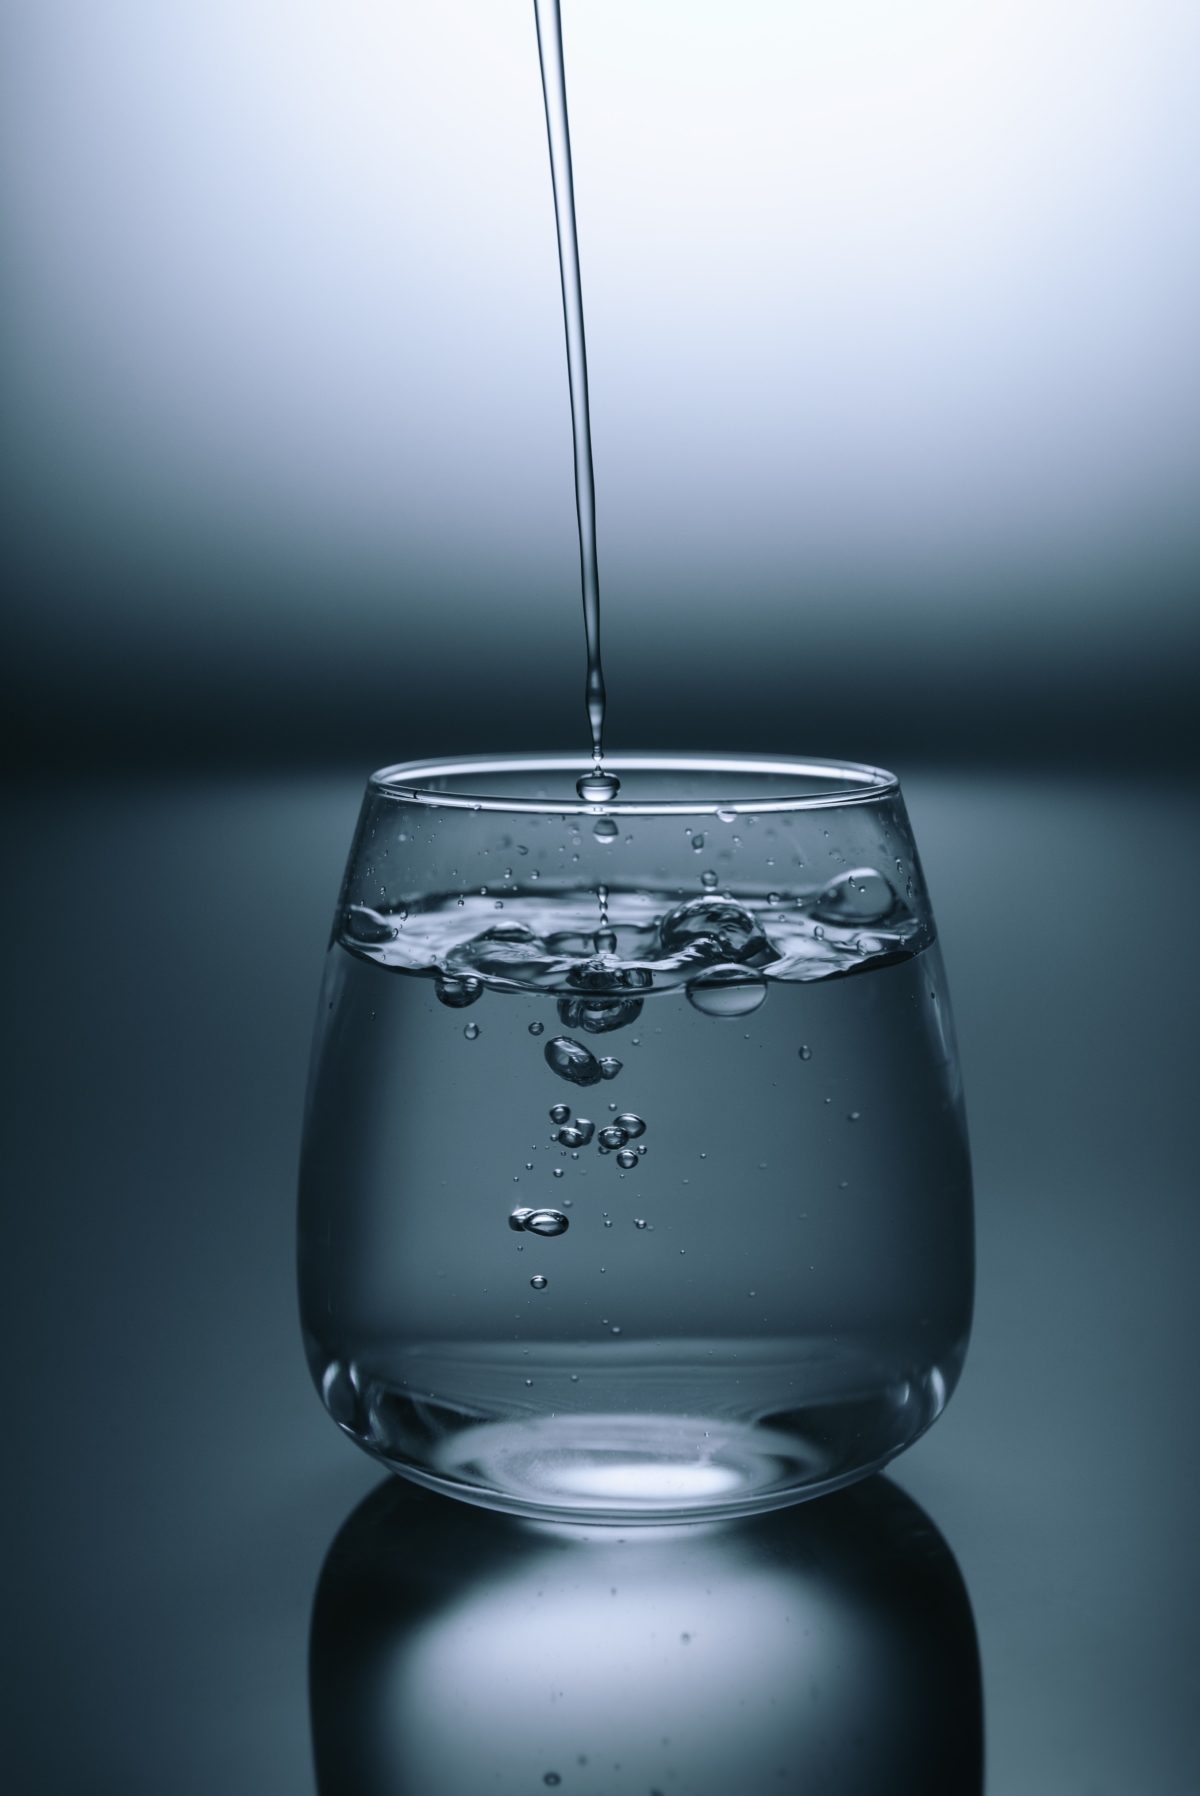 Jüngster Testbericht: Unser Trinkwasser, wie immer, einwandfrei